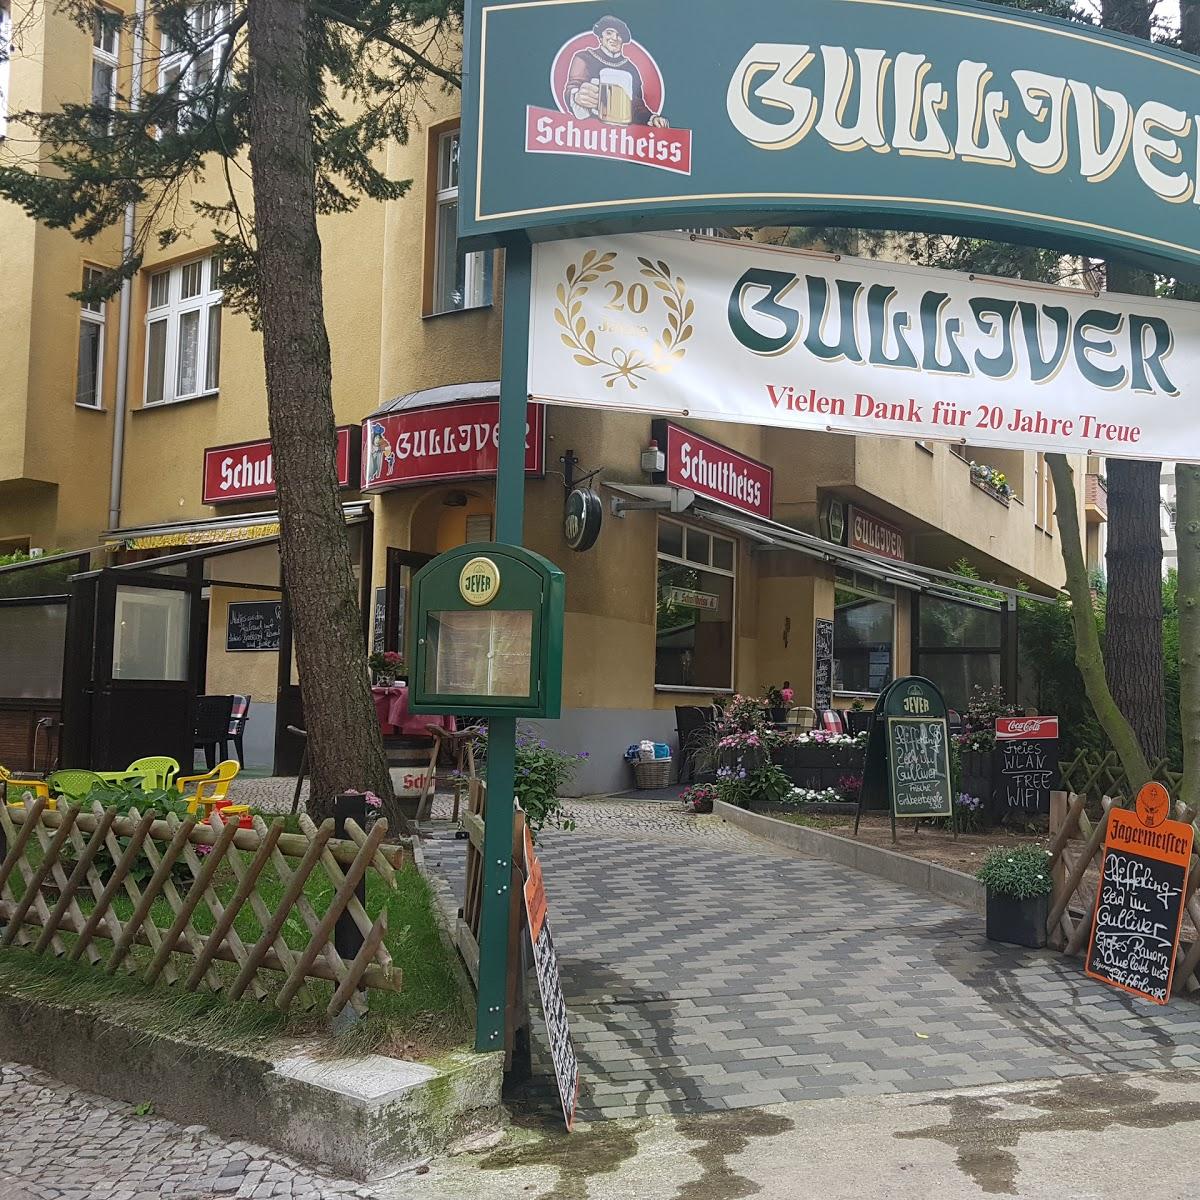 Restaurant "Restaurant Gulliver" in Berlin